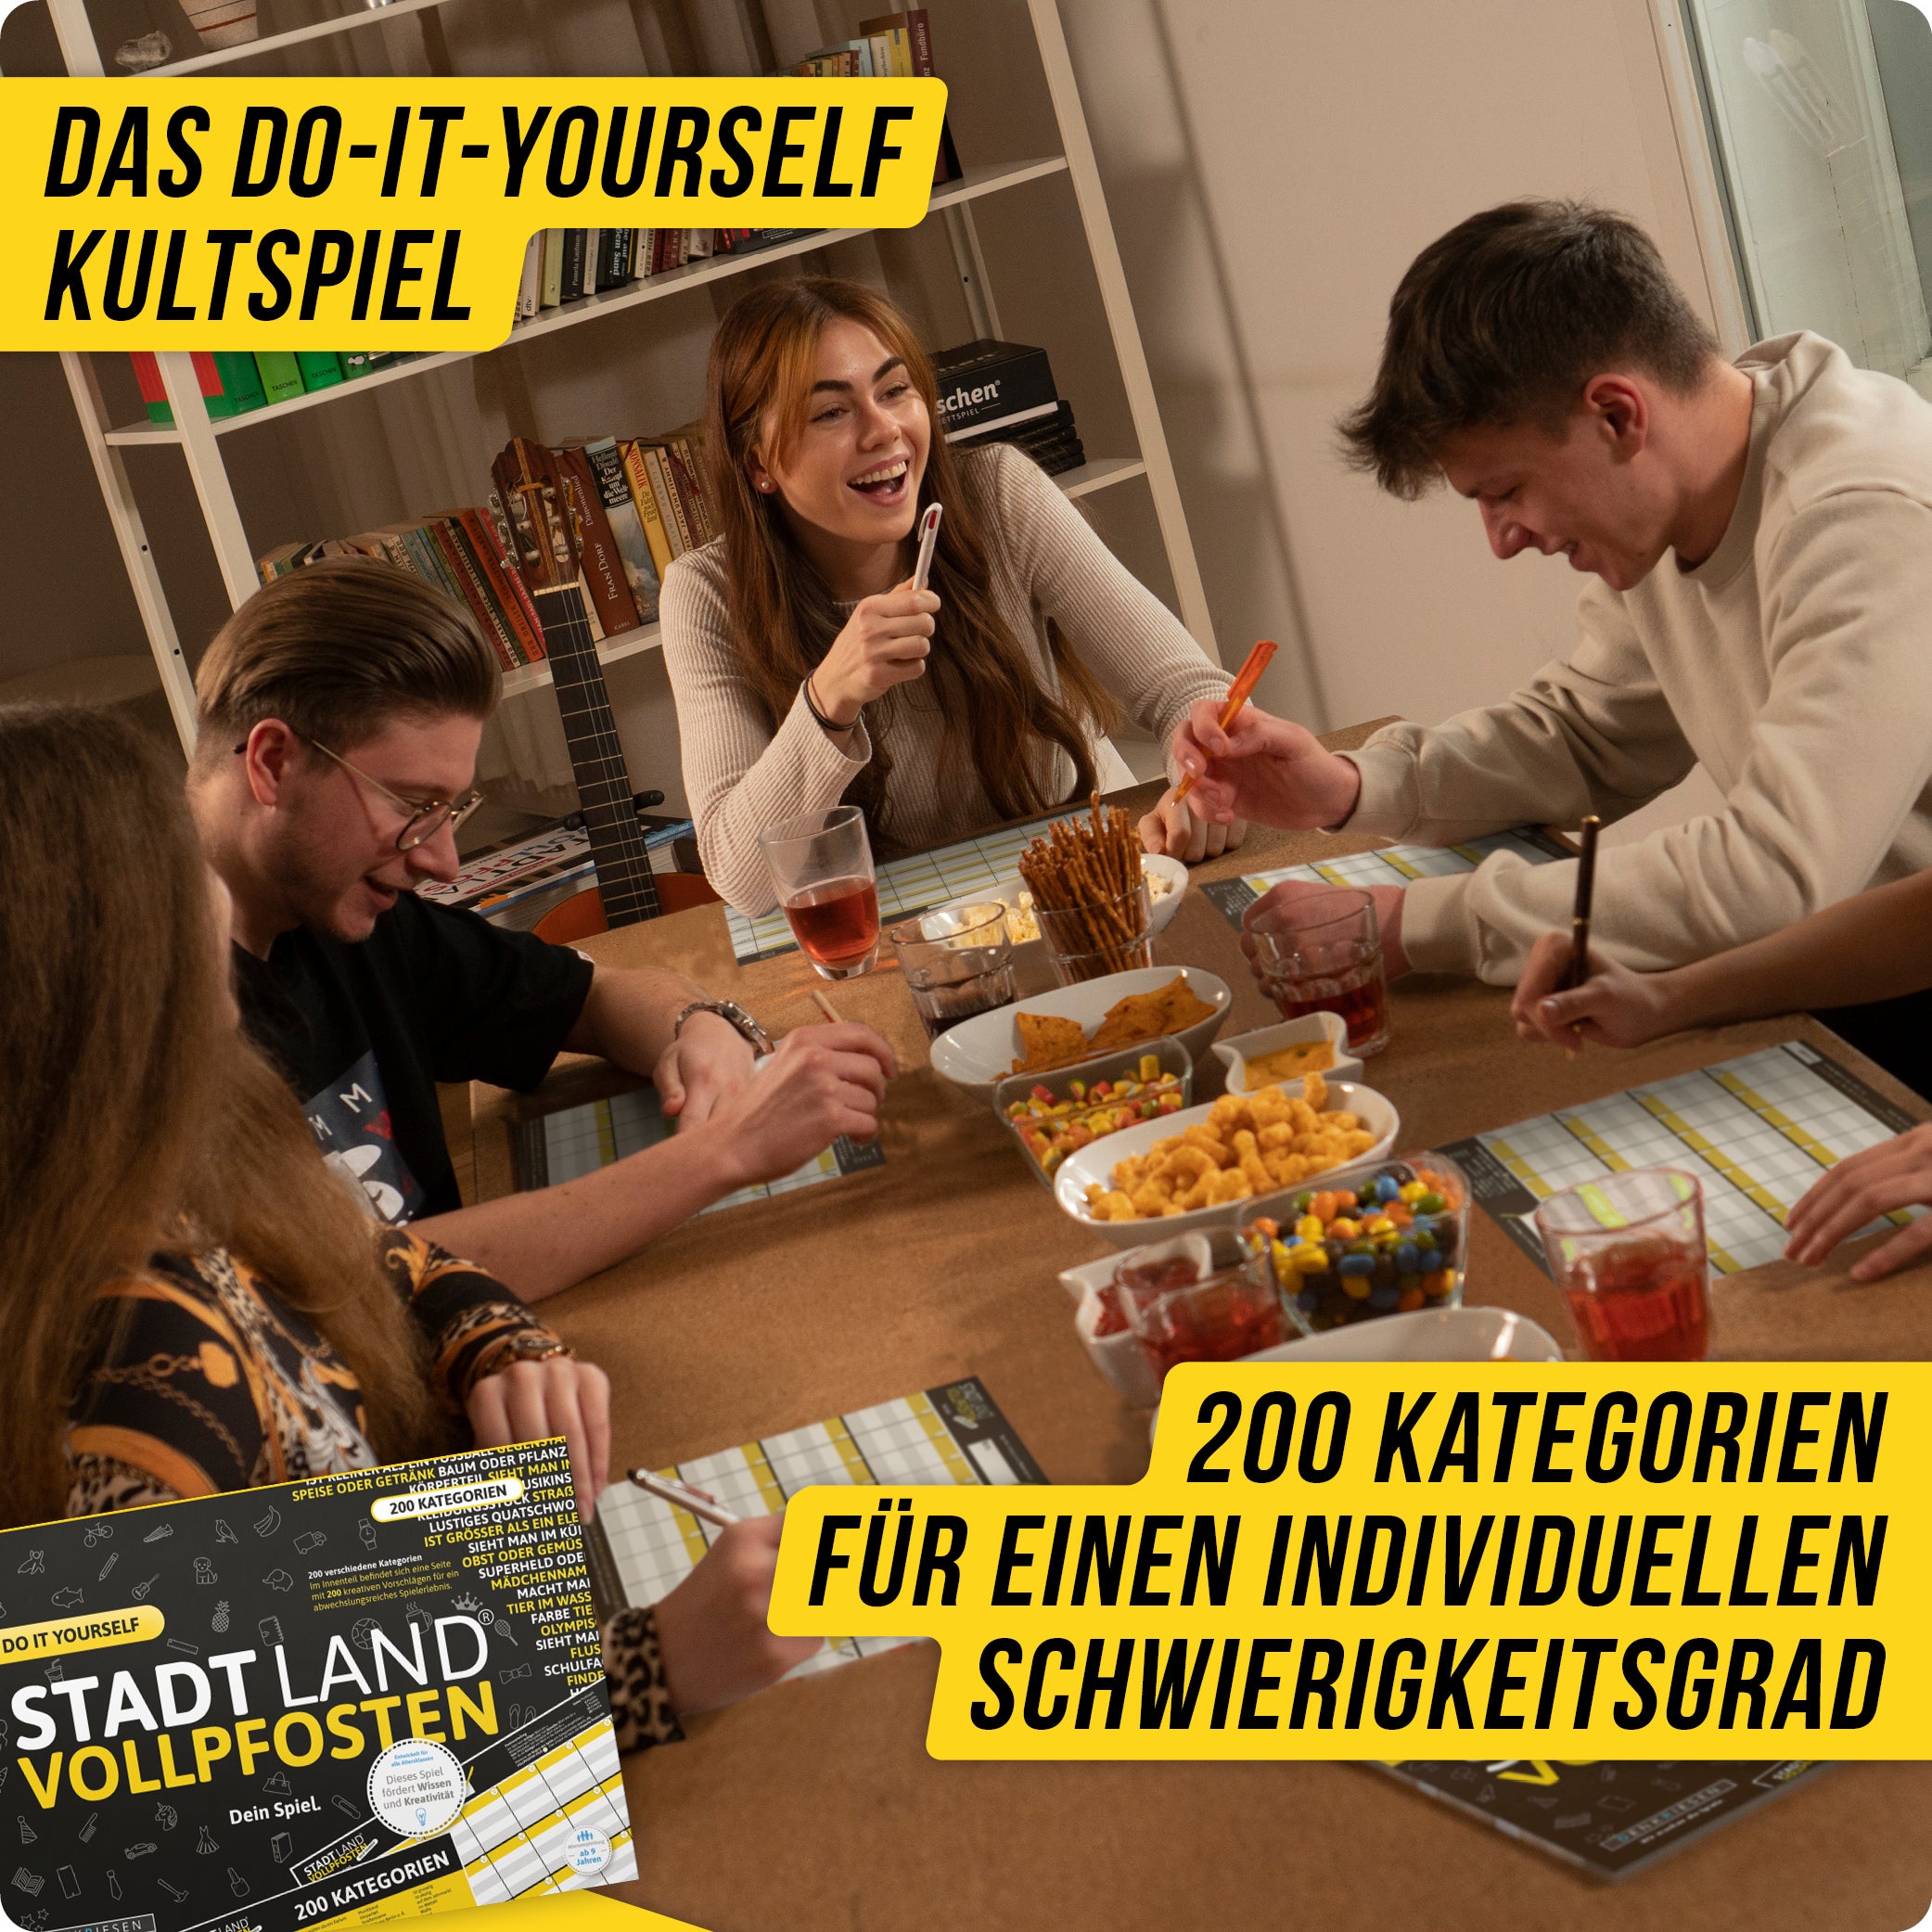 Stadt Land Vollpfosten® Do It Yourself Edition – "Dein Spiel." | A4 Spielblock